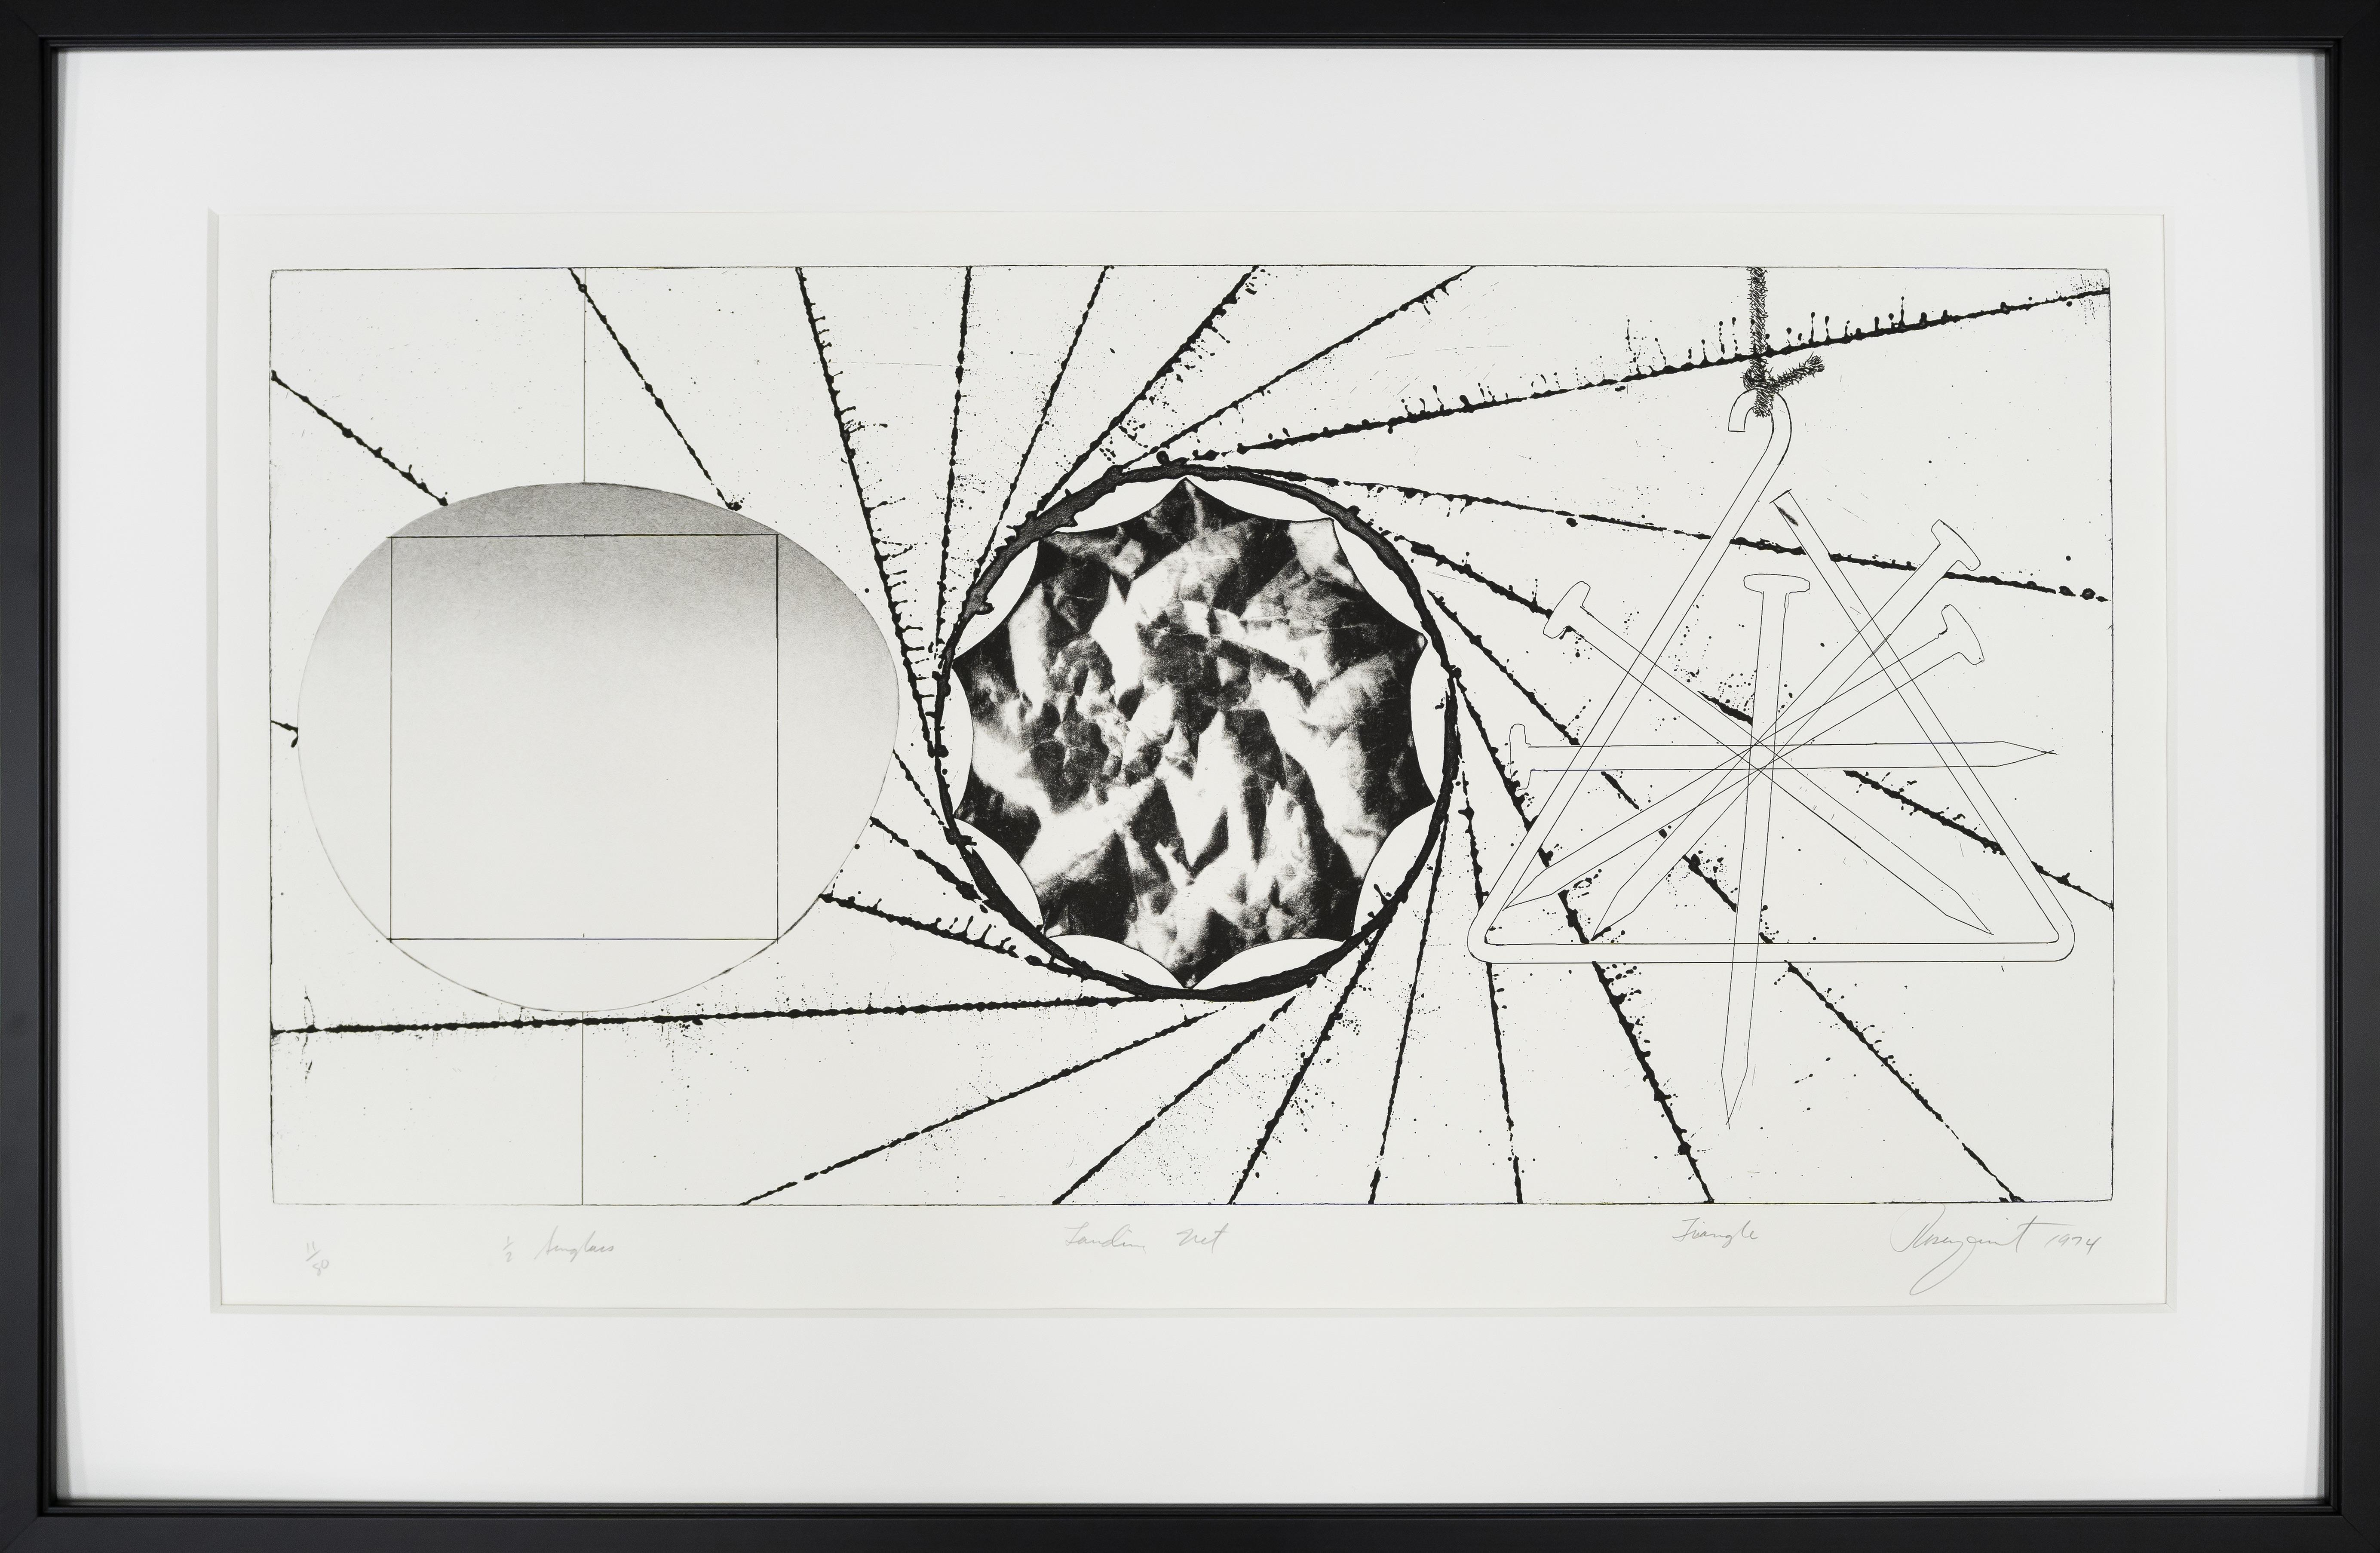 JAMES ROSENQUIST
   (B. 1933)

Sonnenbrillengläser-Landing Net-Triangle

Original-Radierung, 1974
Katalog Nr. 80
Blattgröße: 19 1/2" x 35 1/4"
Ausgabe Nummer 11 von 80
Signiert, nummeriert und datiert im unteren Rand

James Rosenquist, 1933 in Grand